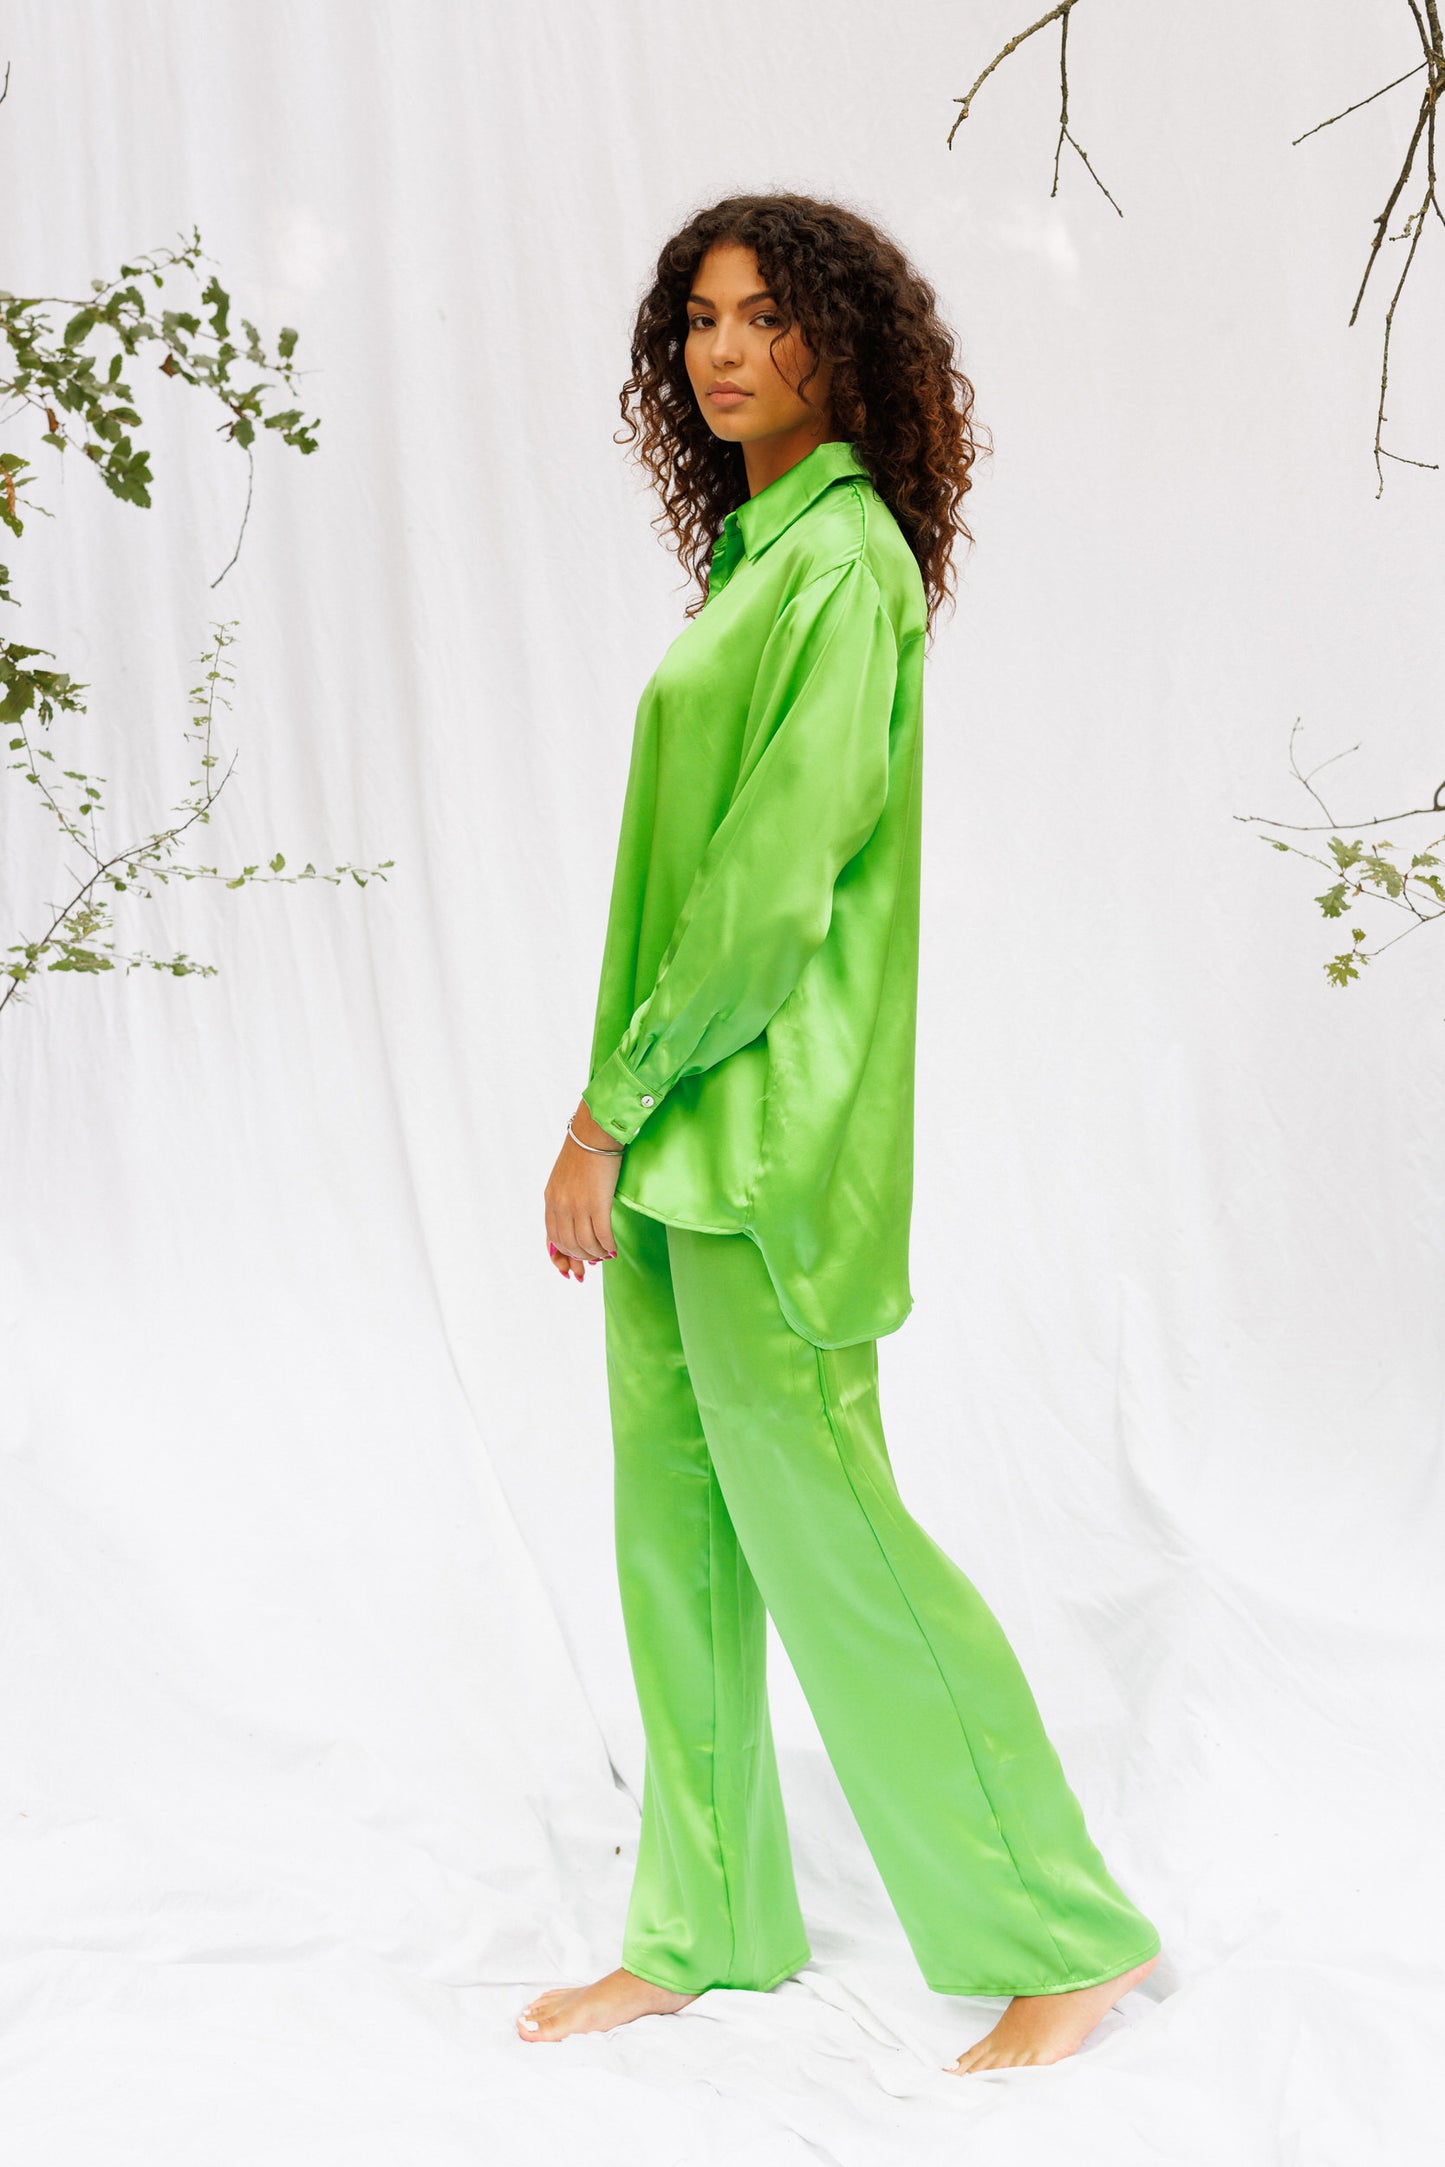 Maria walking around and wearing green silk set